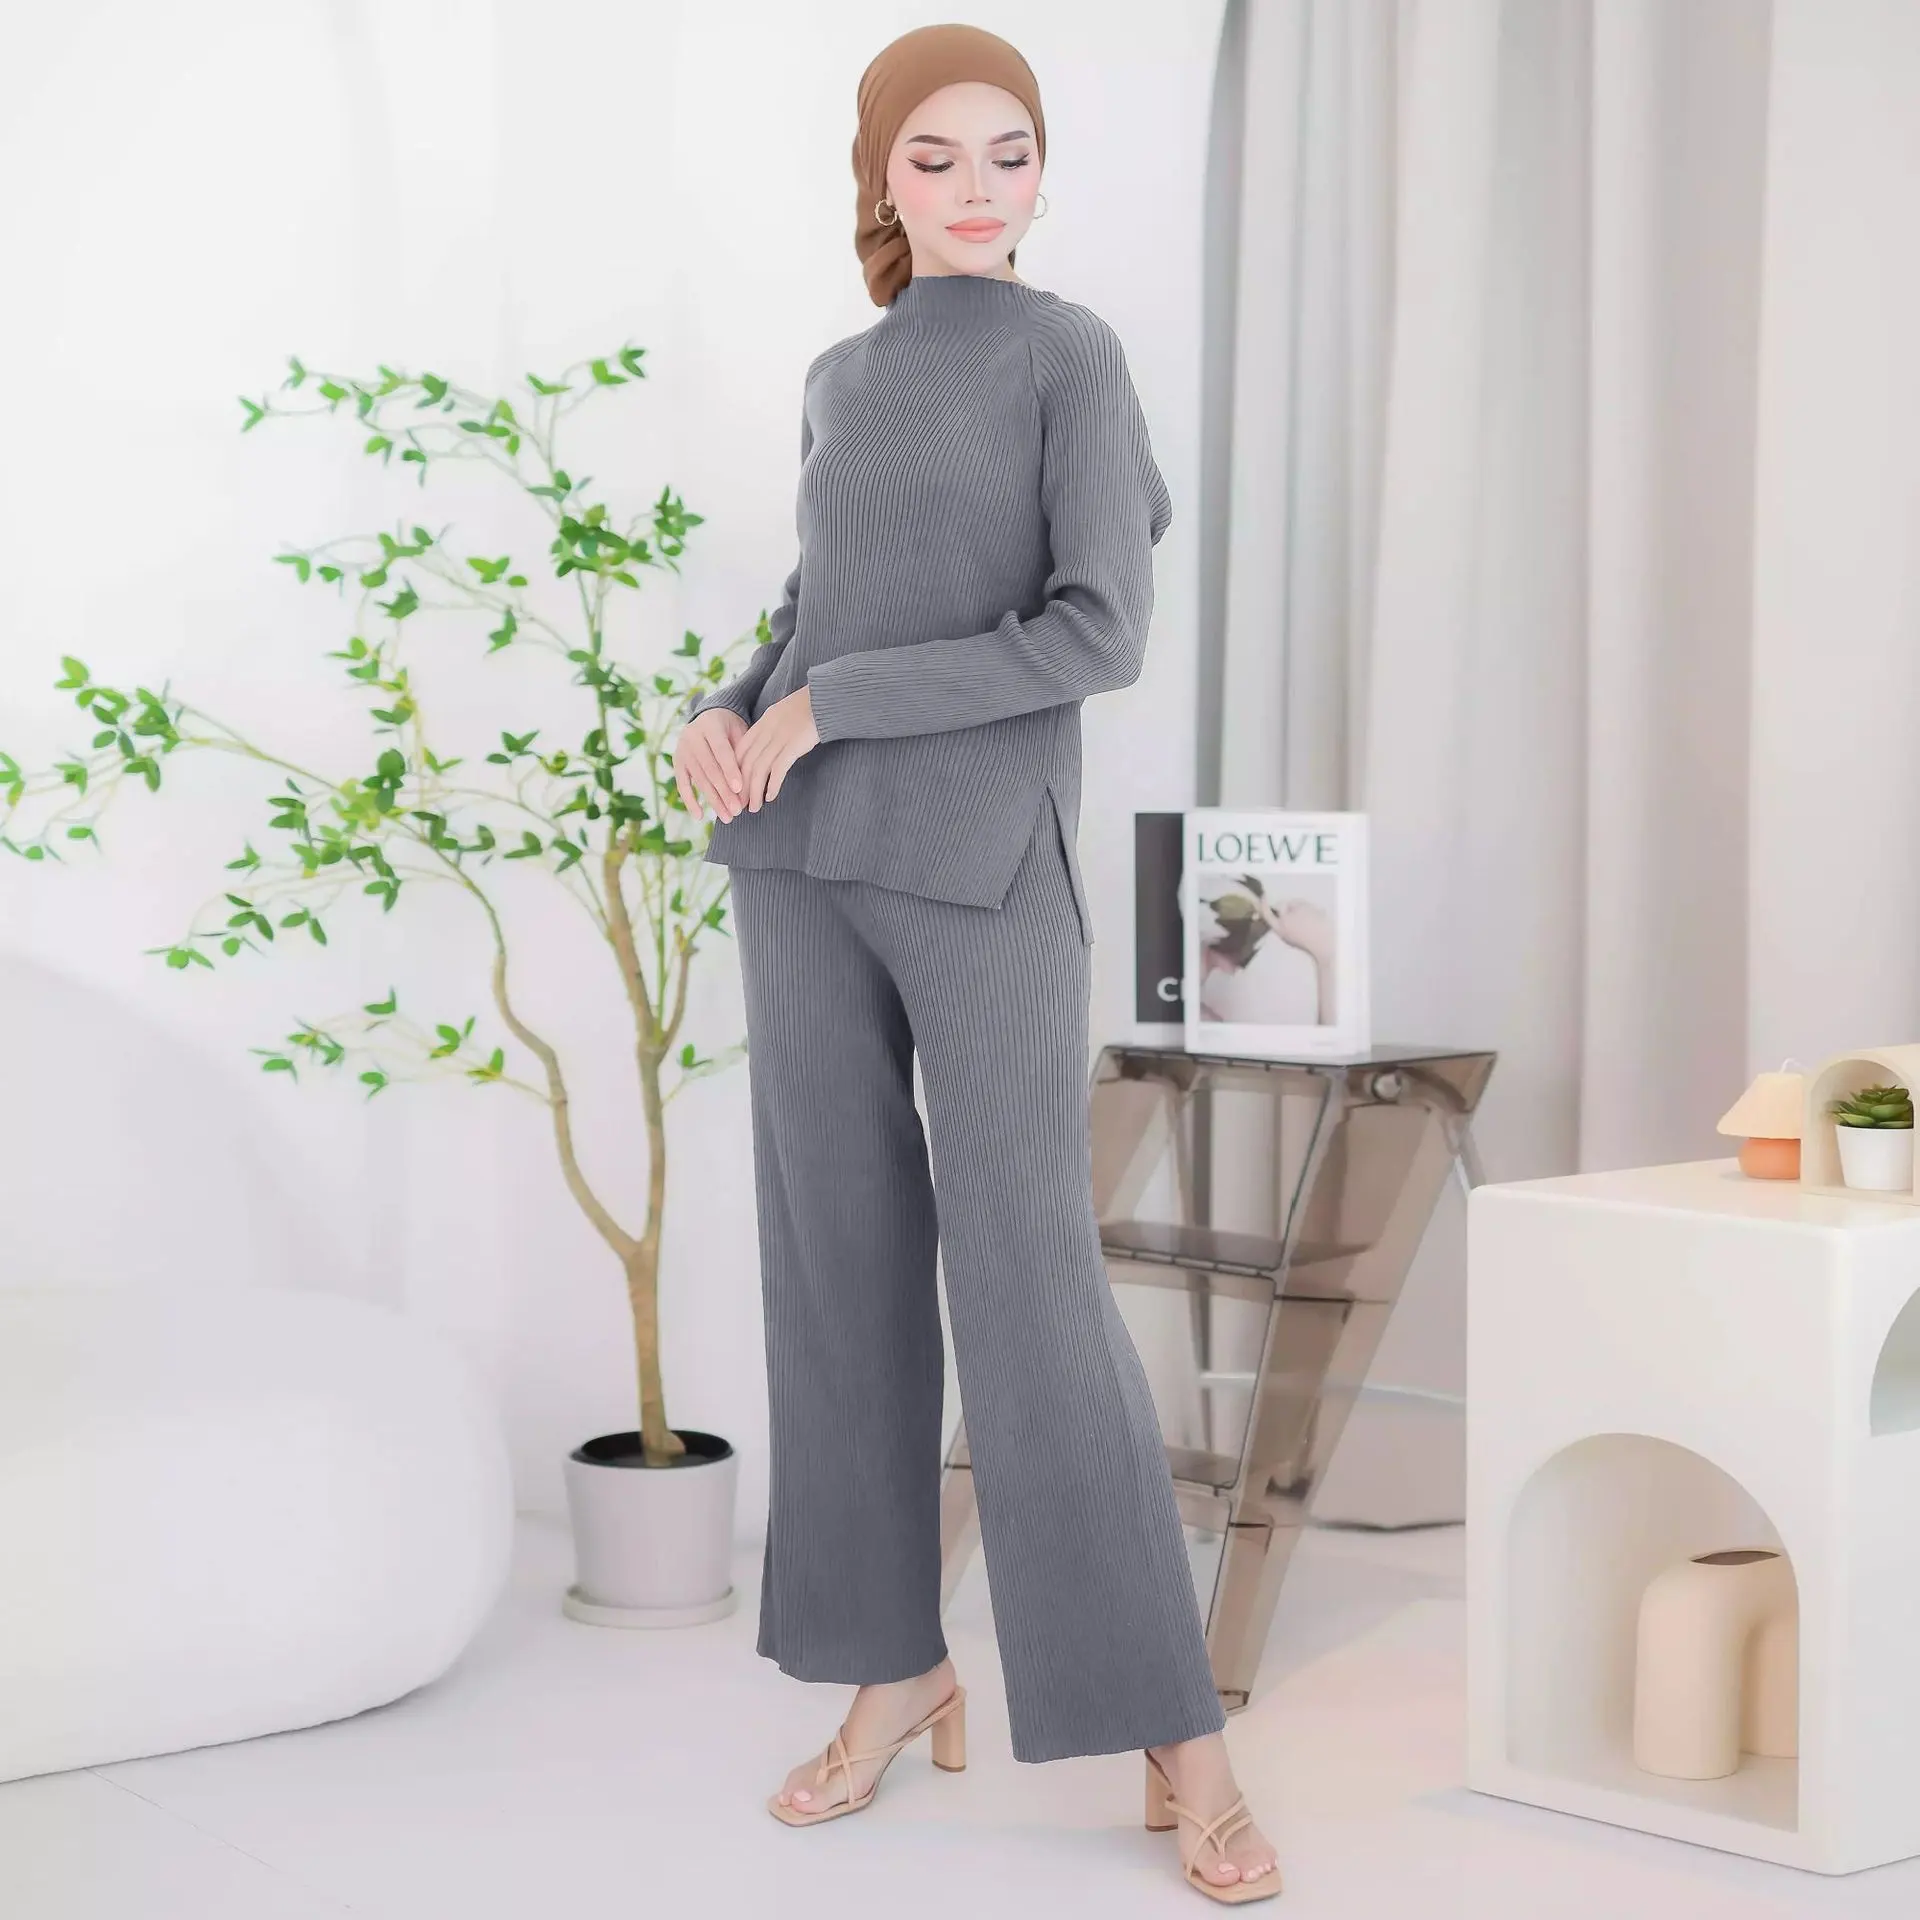 Herbst Winter Pullover Outfit Casual Strick Set Zweiteiliger bescheidener Stil Malaysia Indonesien Islamische Kleidung